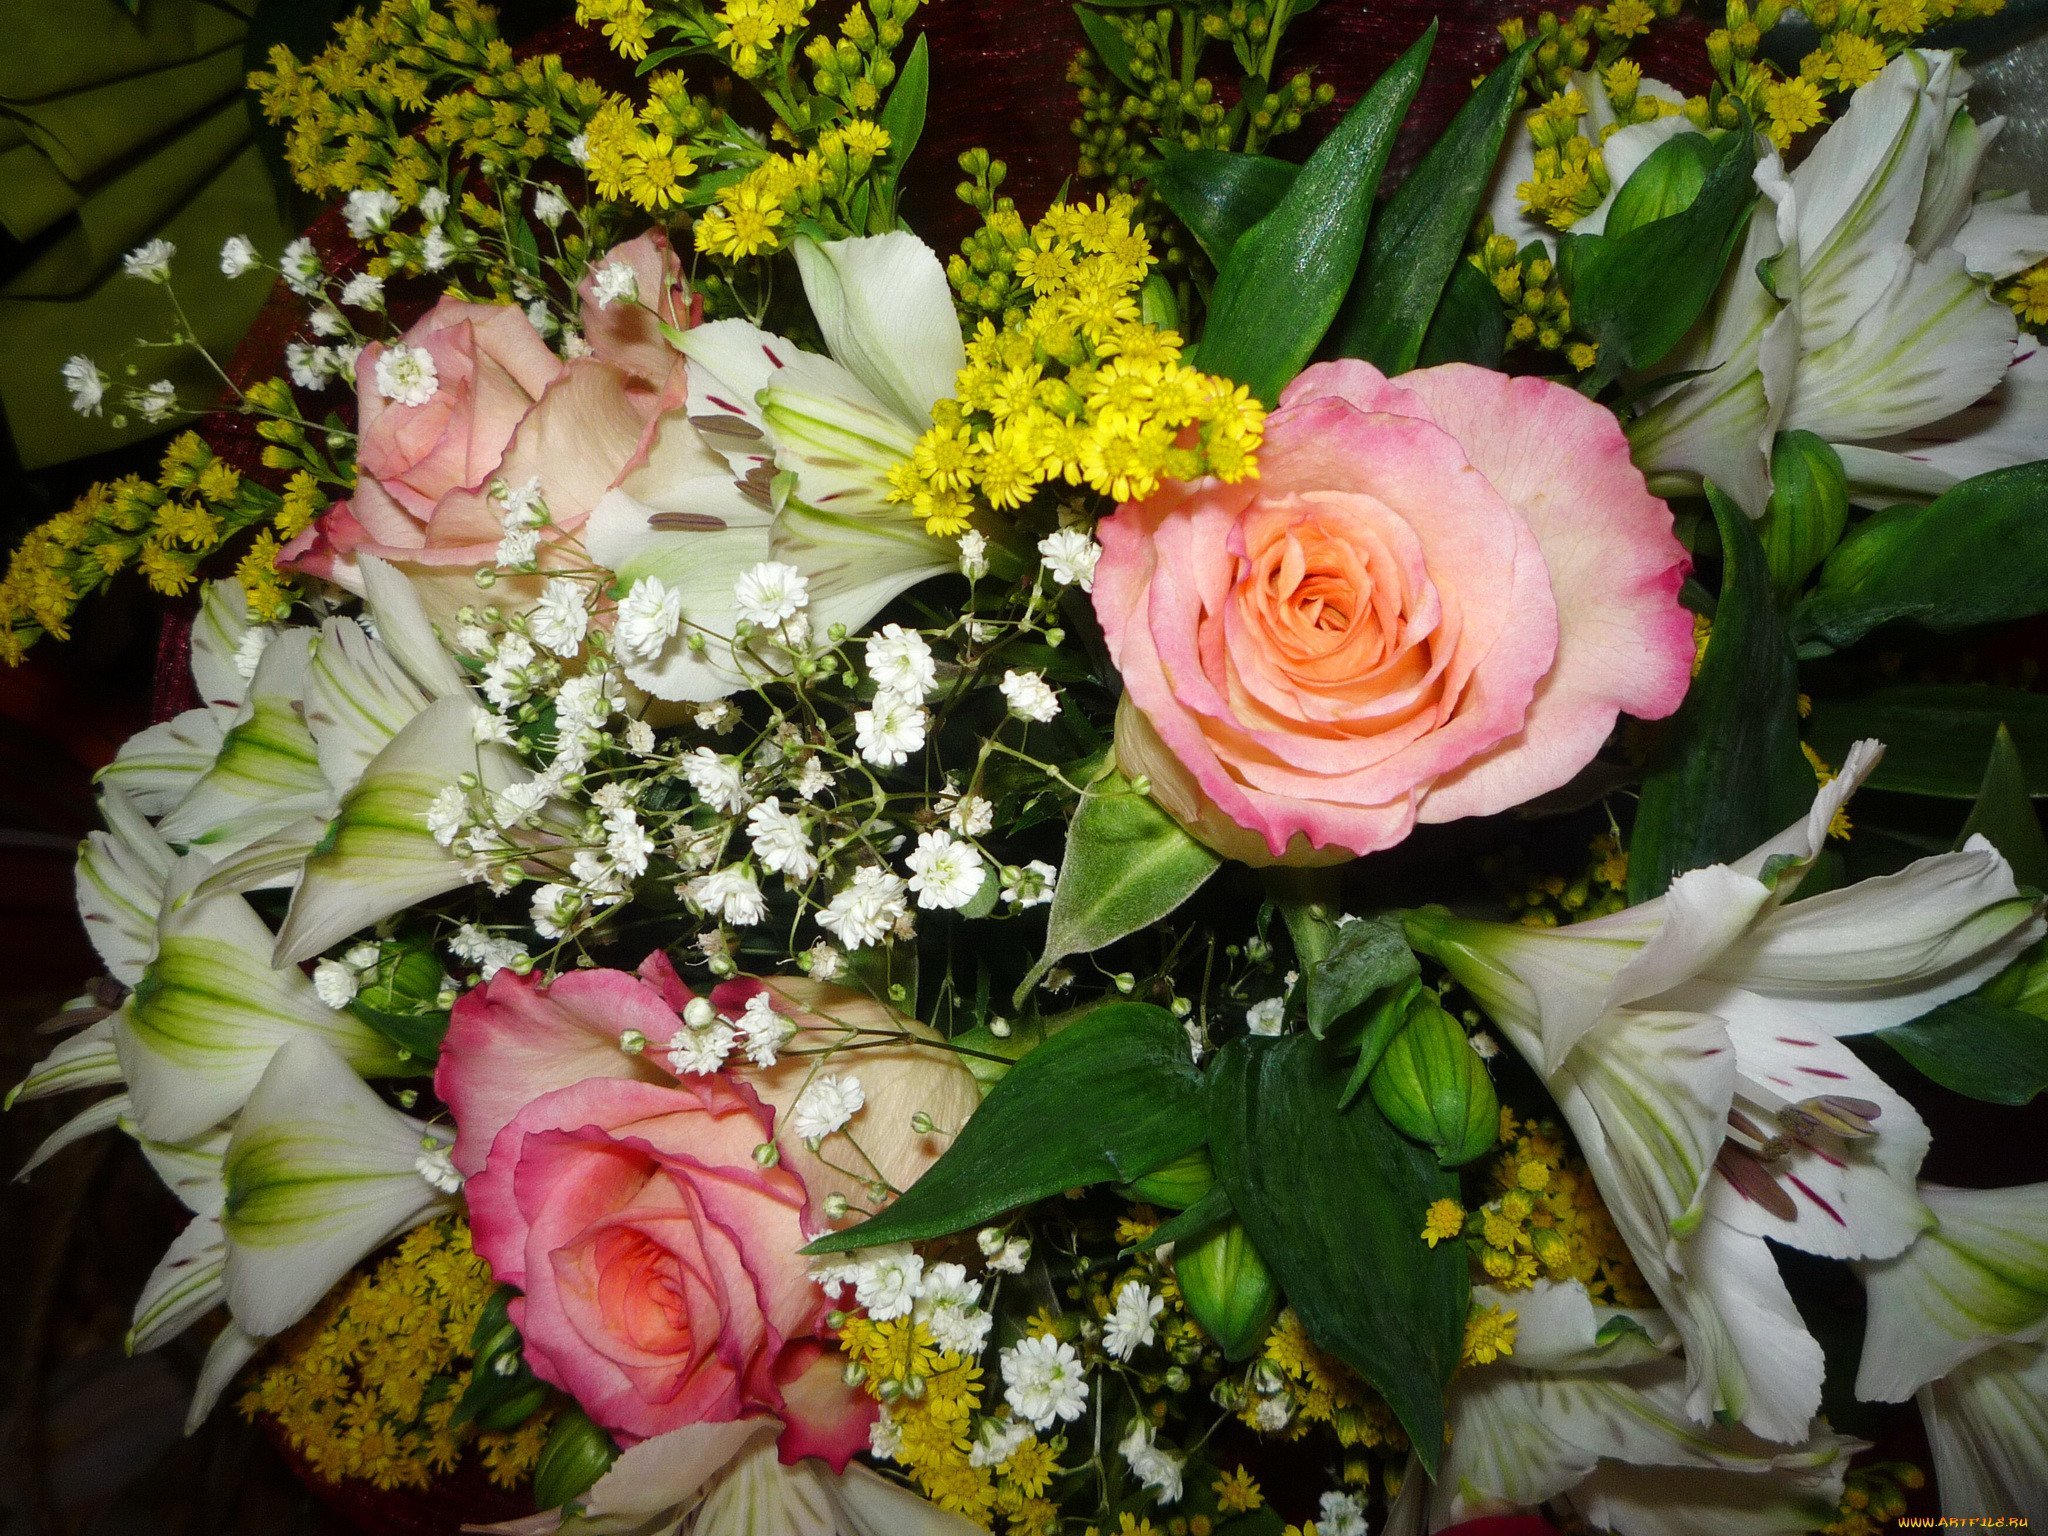 Фото реальных букетов цветов дома. Букет цветов. Красивый букет цветов. Шикарный букет цветов. Реальные букеты цветов.